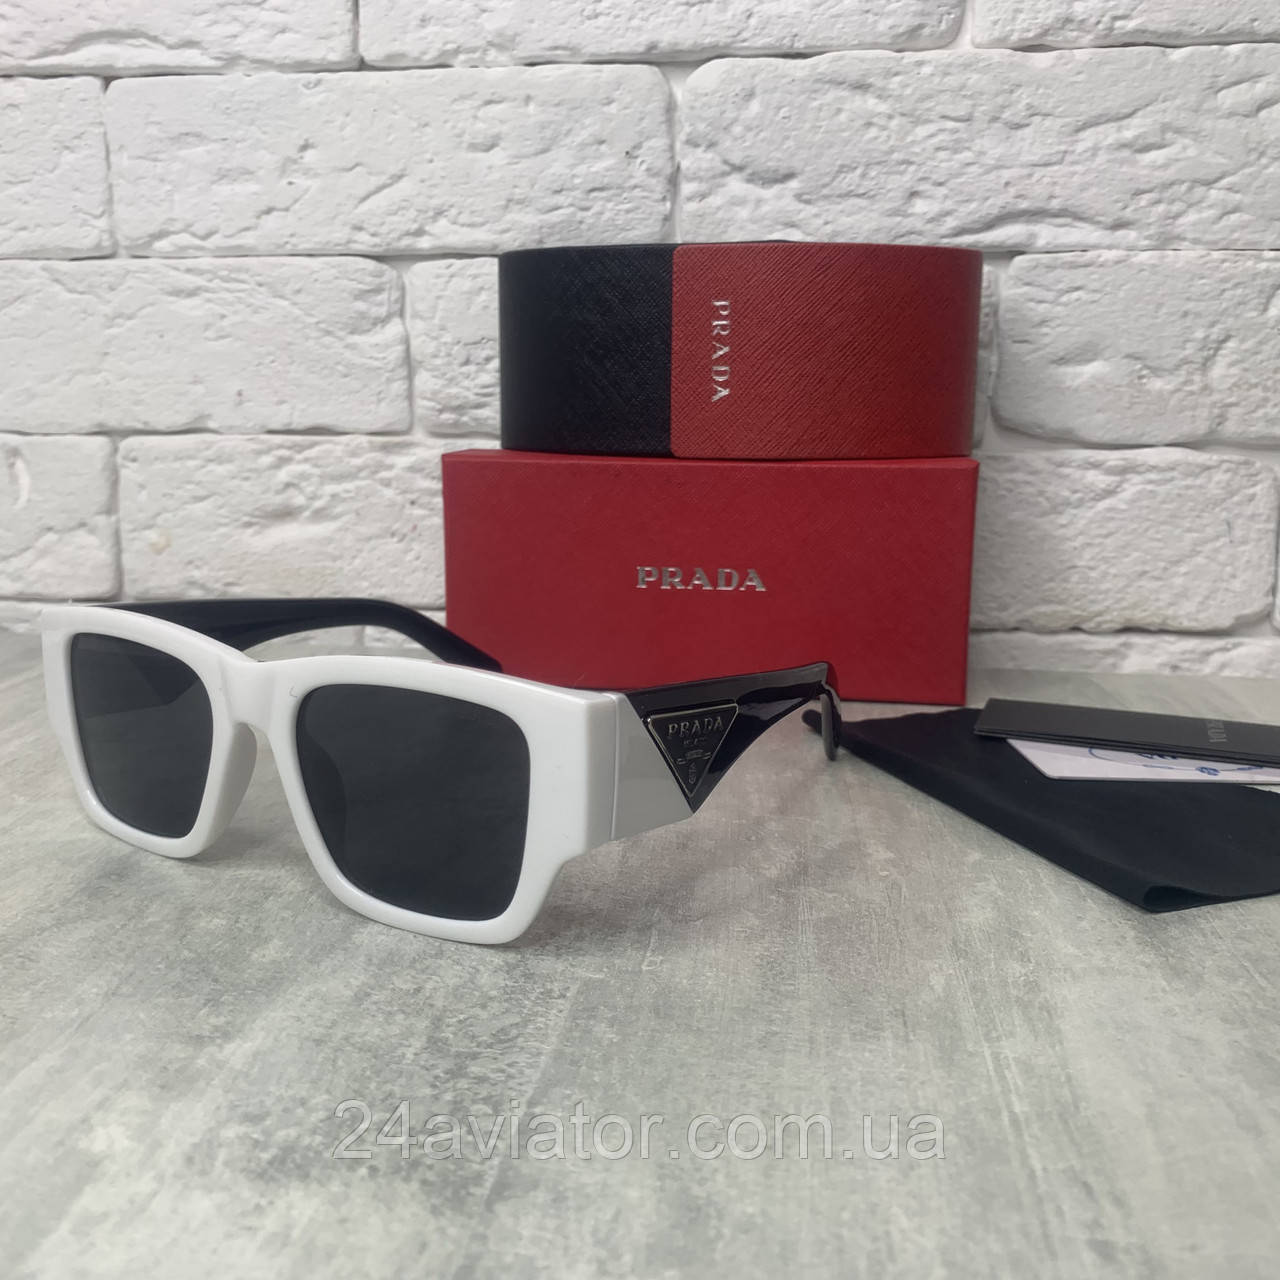 Сонцезахисні окуляри жіночі PR 5605 чорно-білий, окуляри модель 2023 року